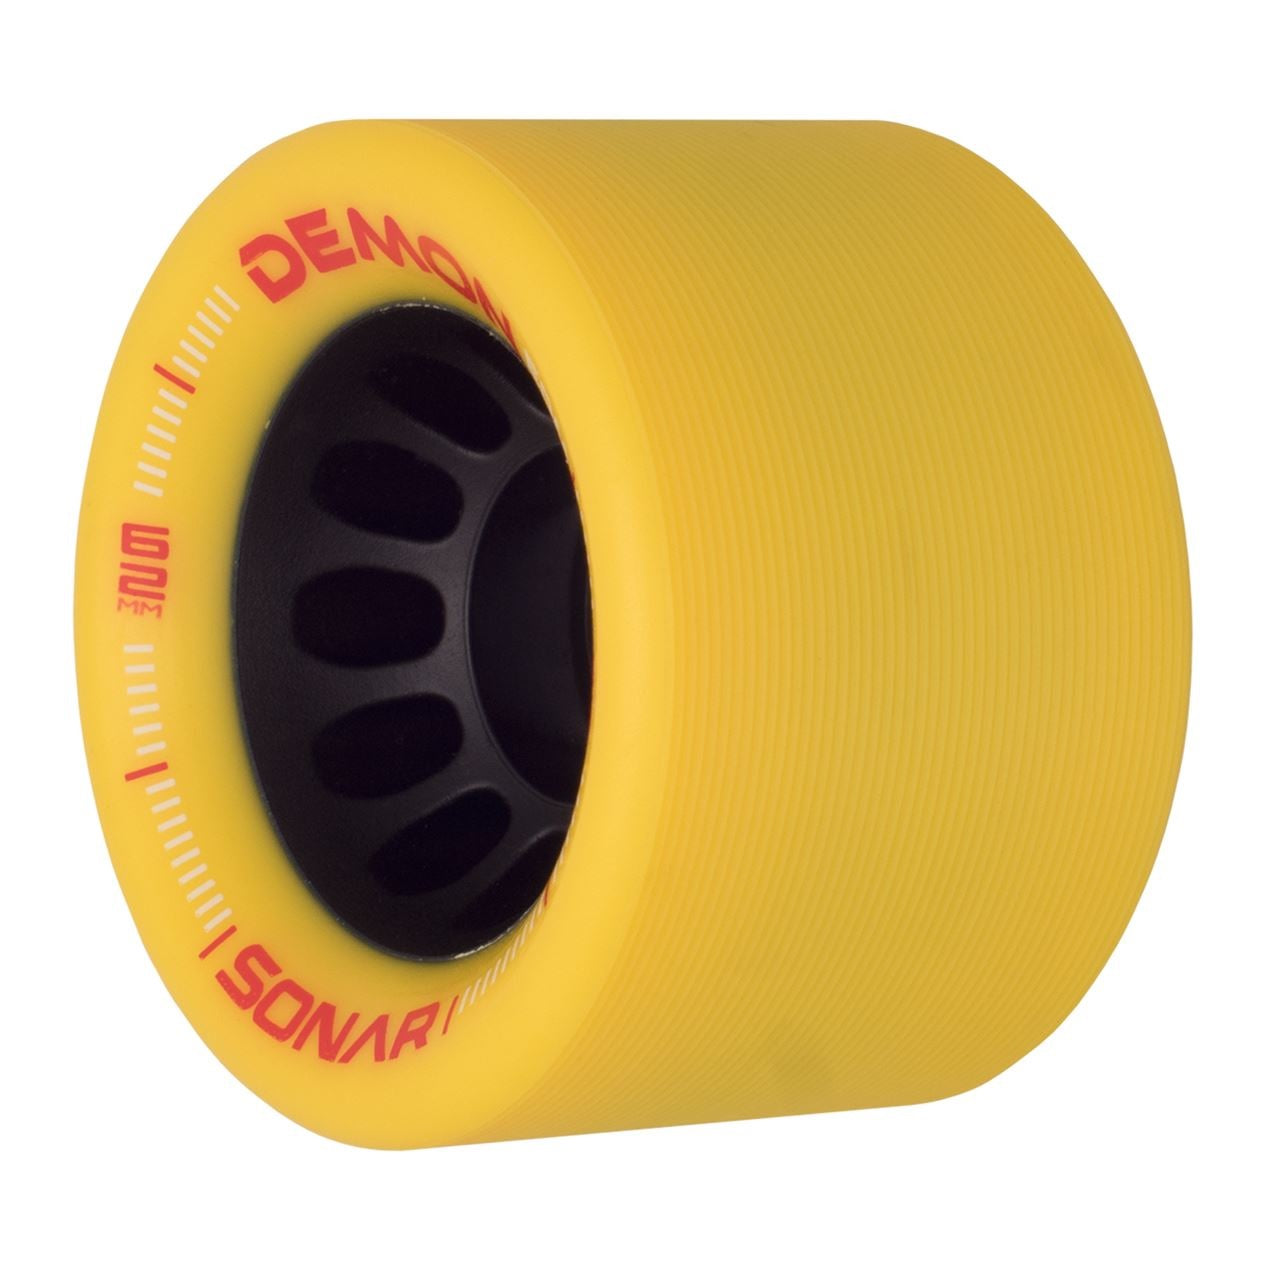 Sonar Demon EDM Ruedas para patines amarillas 62 mm 95a - Juego de 4